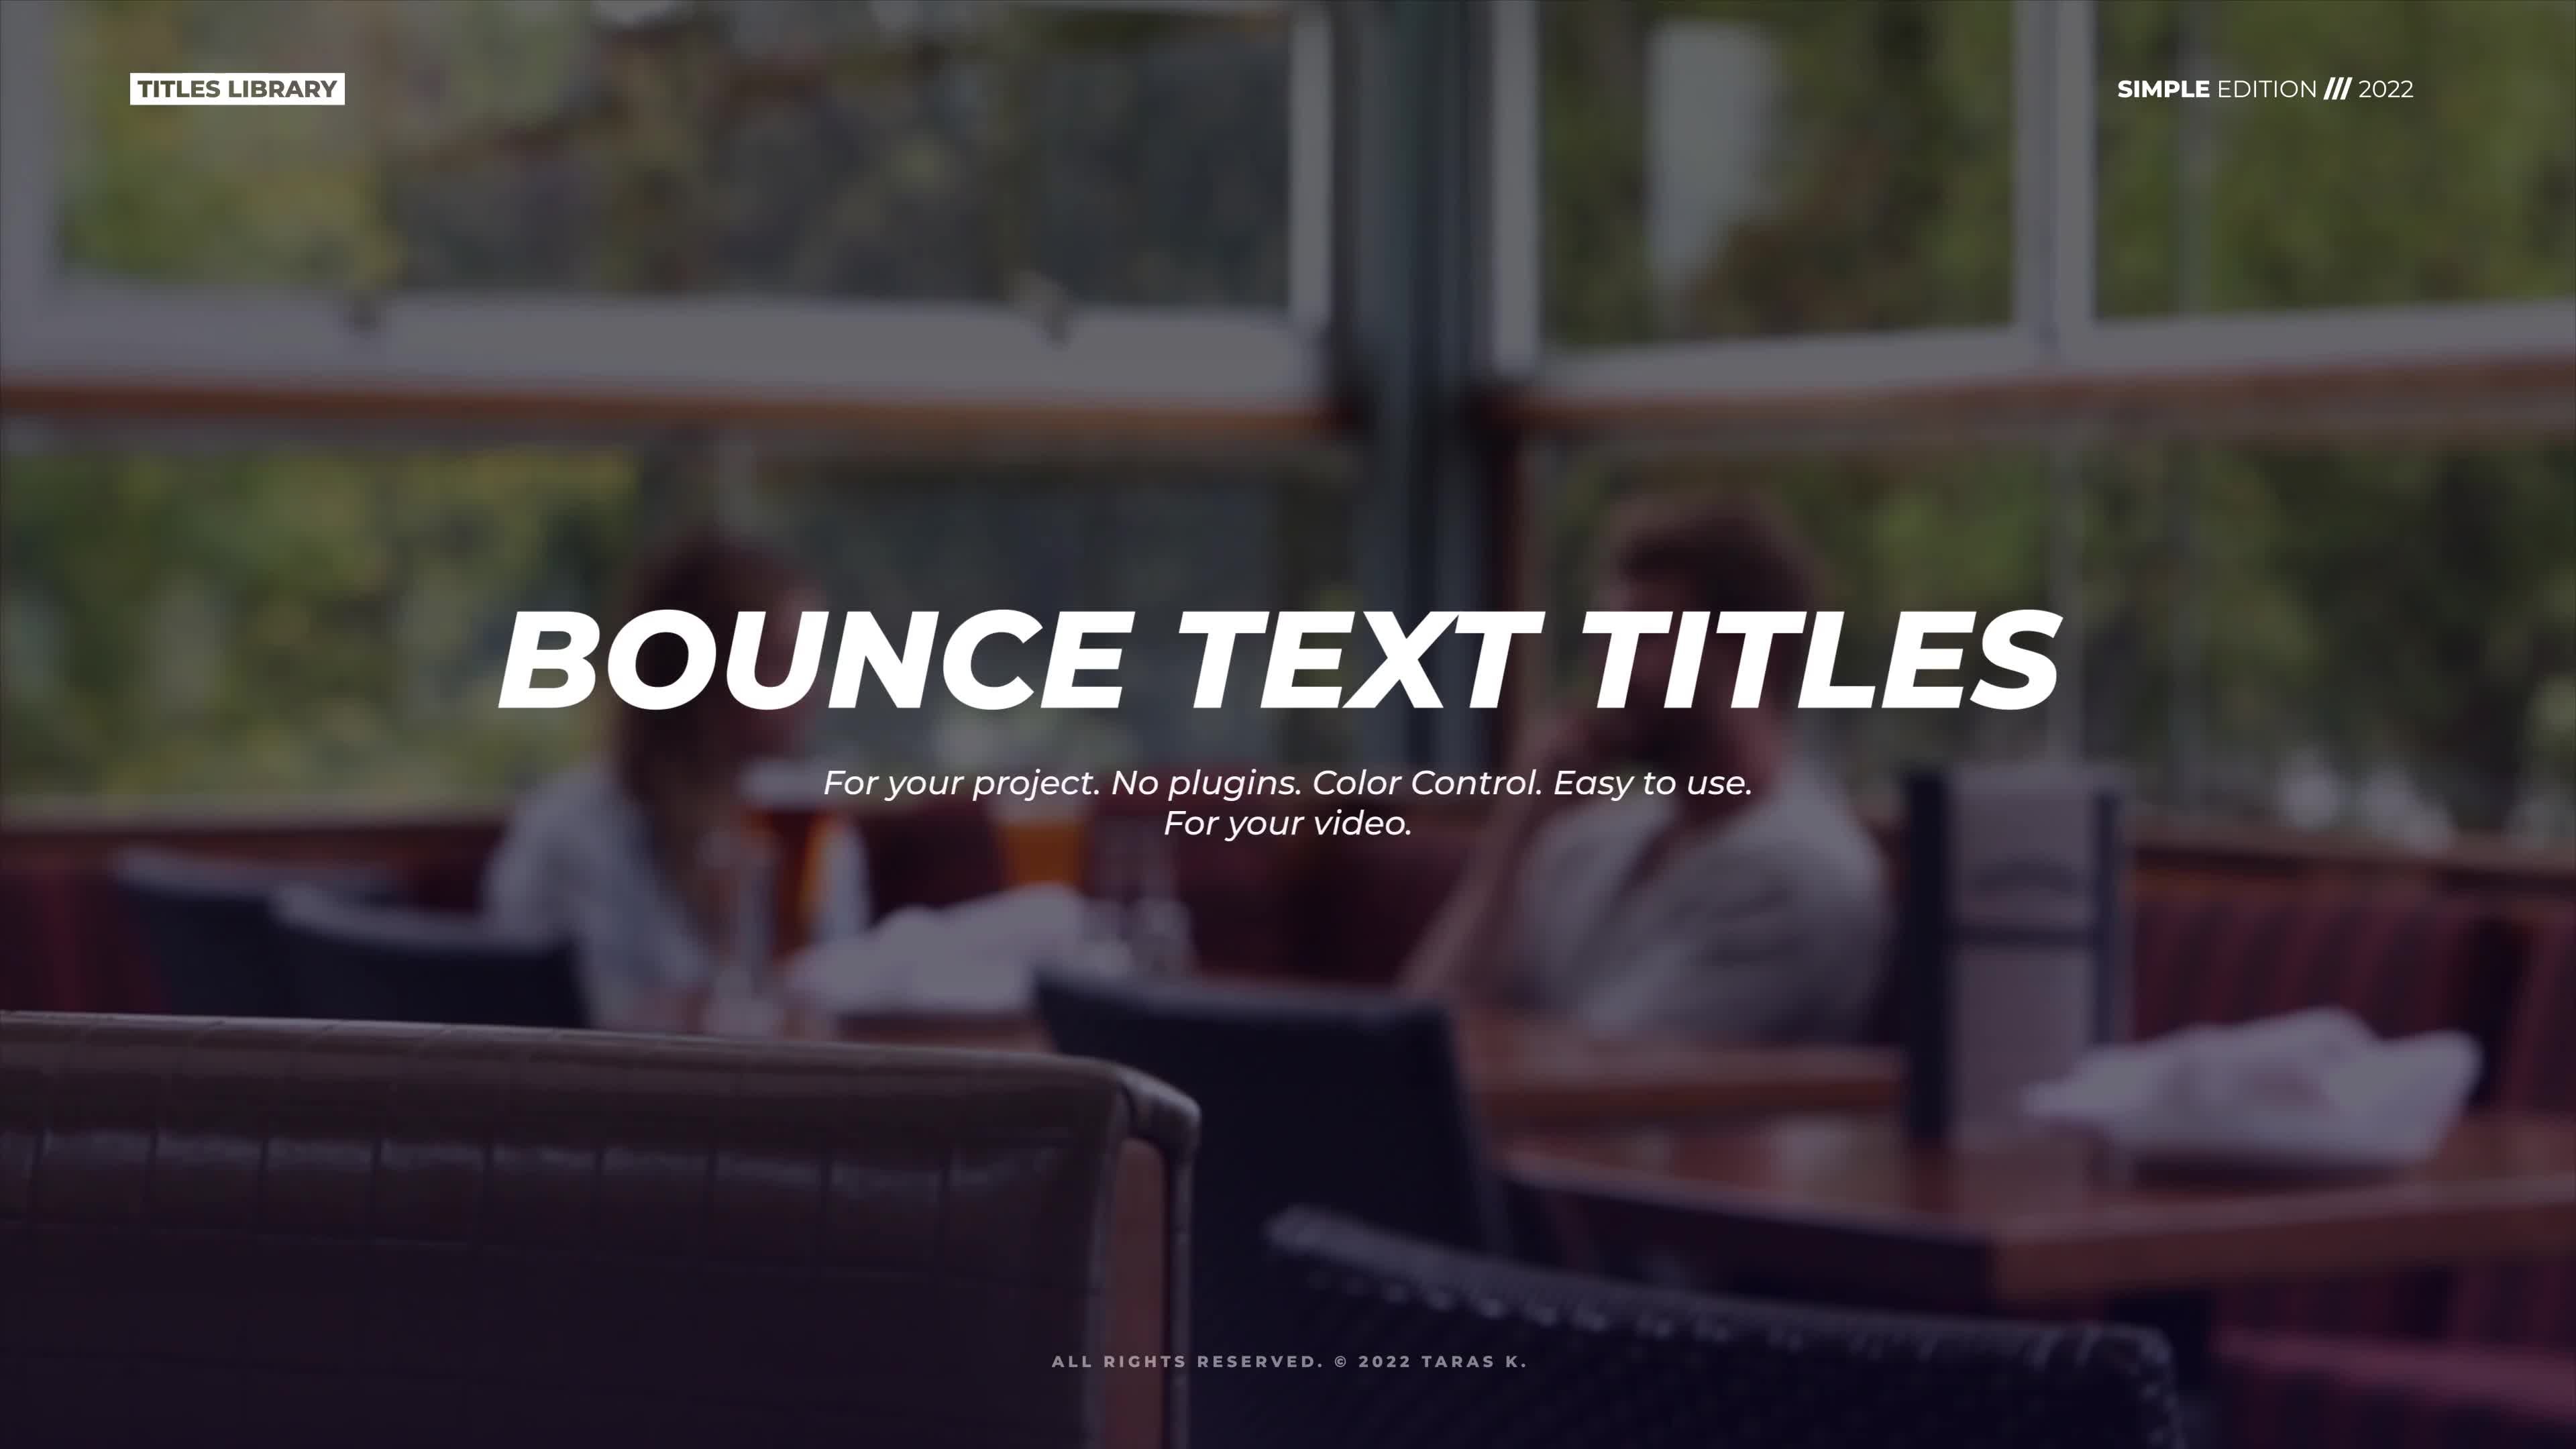 Bounce Text Titles | Premiere Pro Videohive 37918046 Premiere Pro Image 1